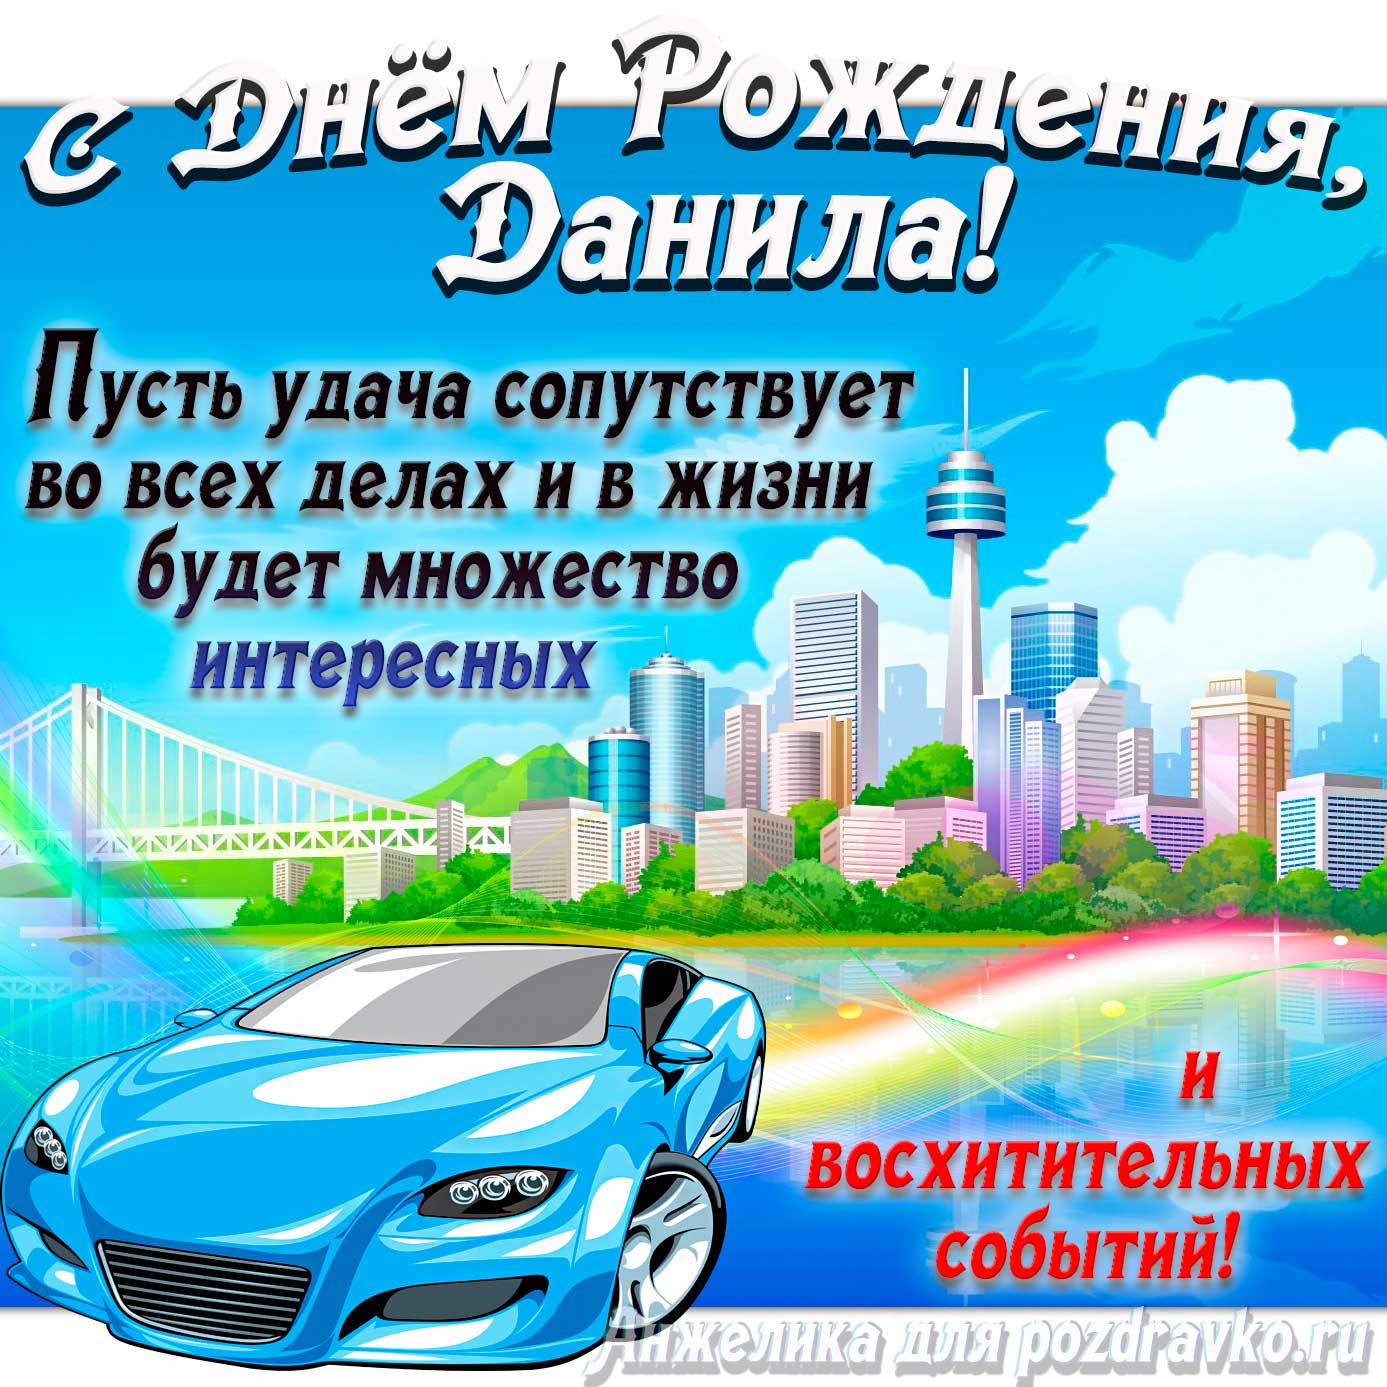 Открытка - с Днём Рождения Данила с голубой машиной и пожеланием. Скачать бесплатно или отправить картинку.